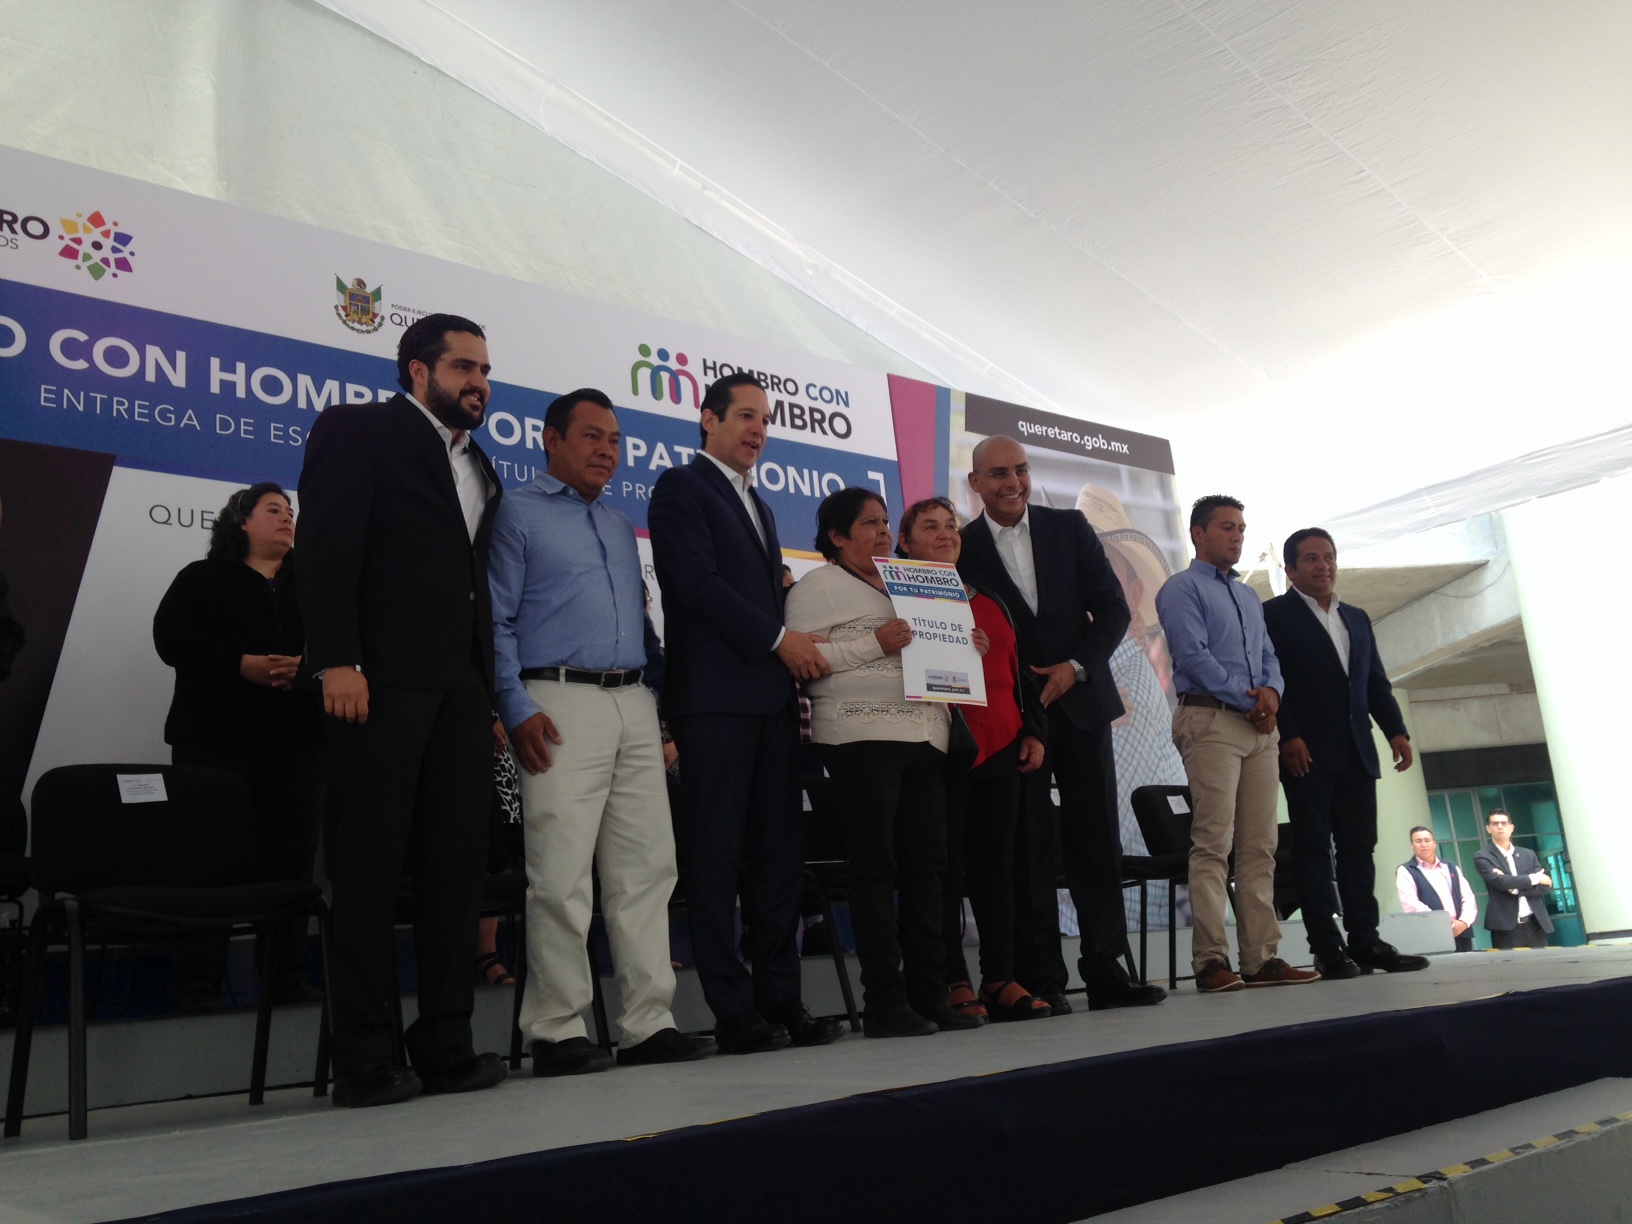  Pancho Domínguez se compromete a eliminar pobreza extrema en Querétaro